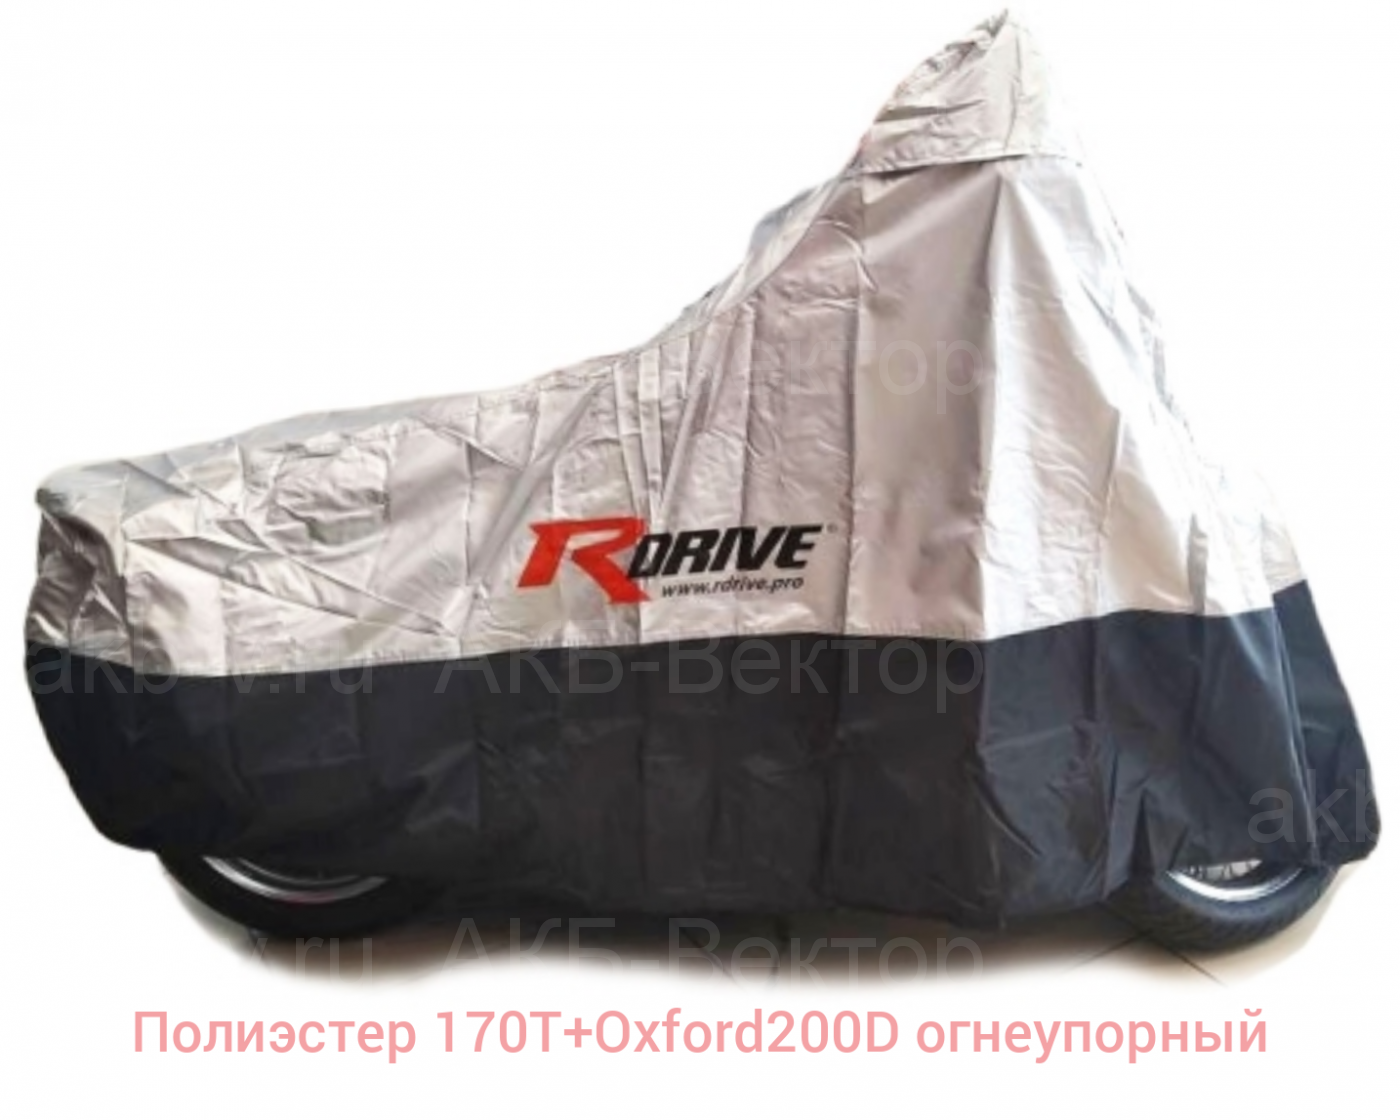 Тент-Чехол для мотоцикла RDrive Extra (полиэстер 170Т+Oxford 200D)+сумка (XL)